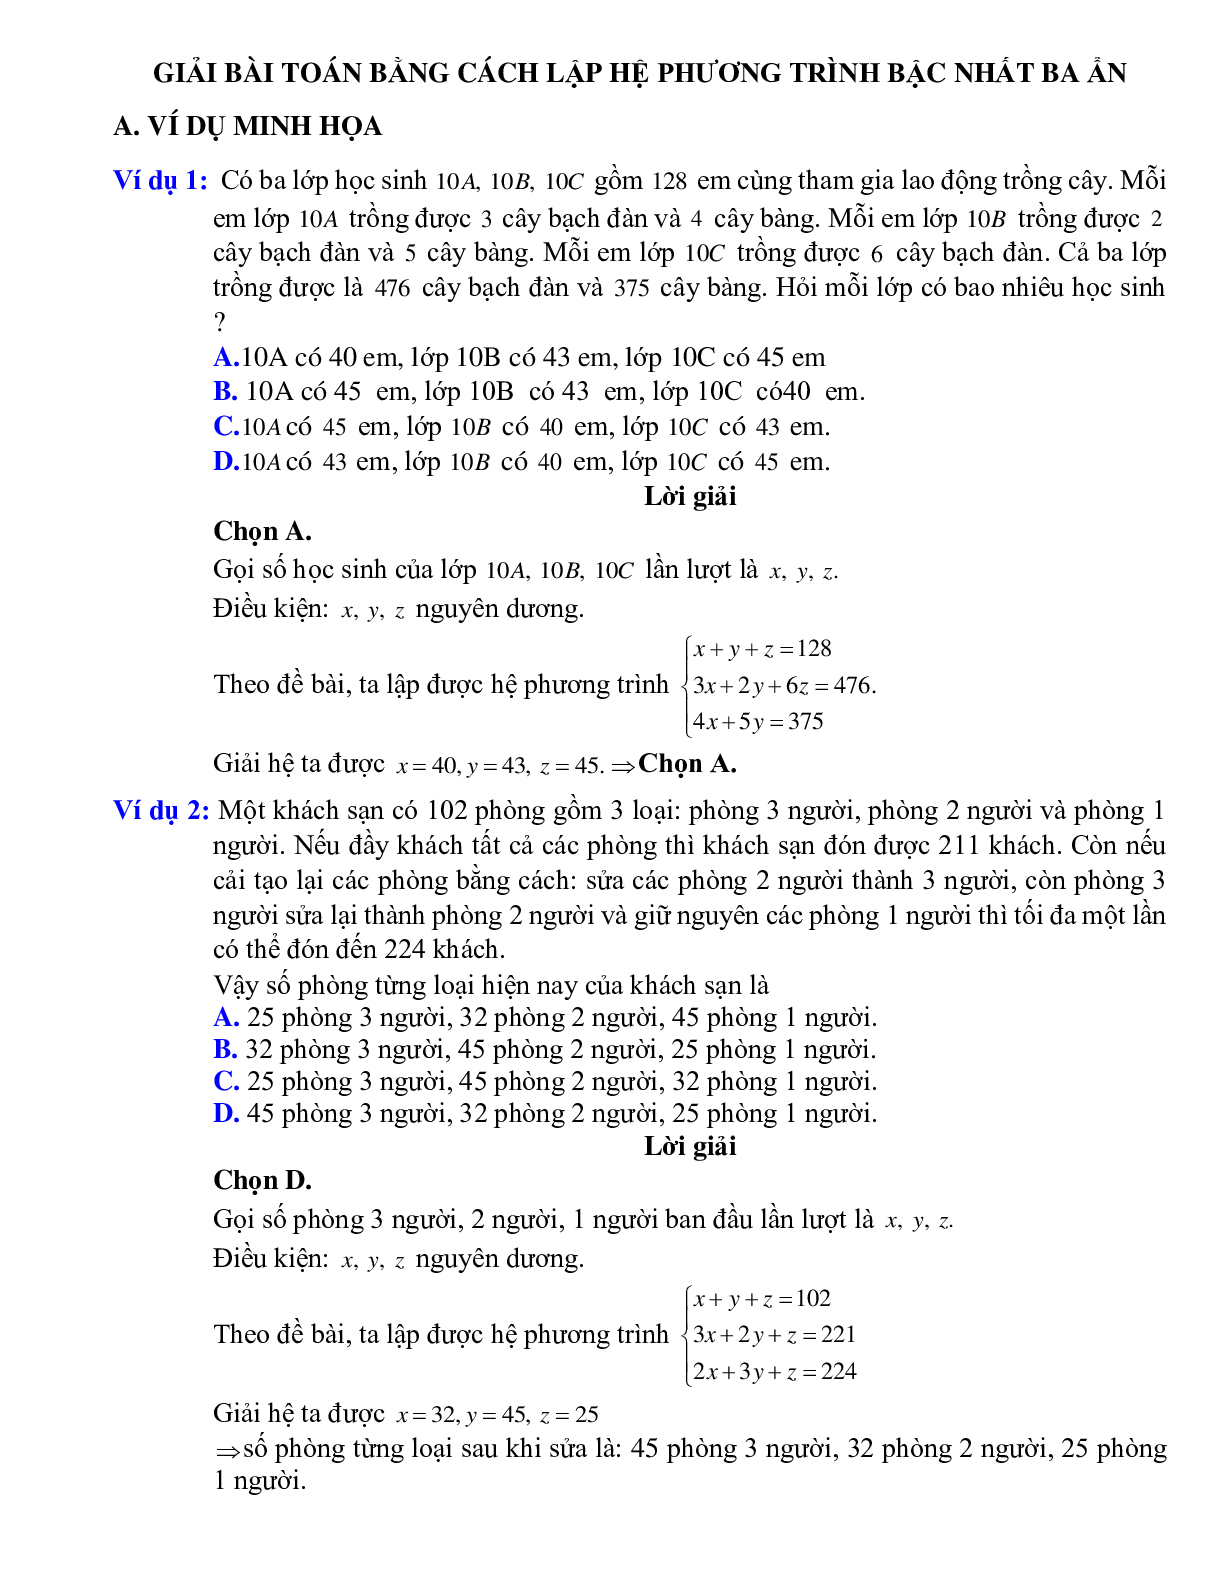 Giải bài toán bằng cách lập hệ phương trình bậc nhất ba ẩn (trang 1)